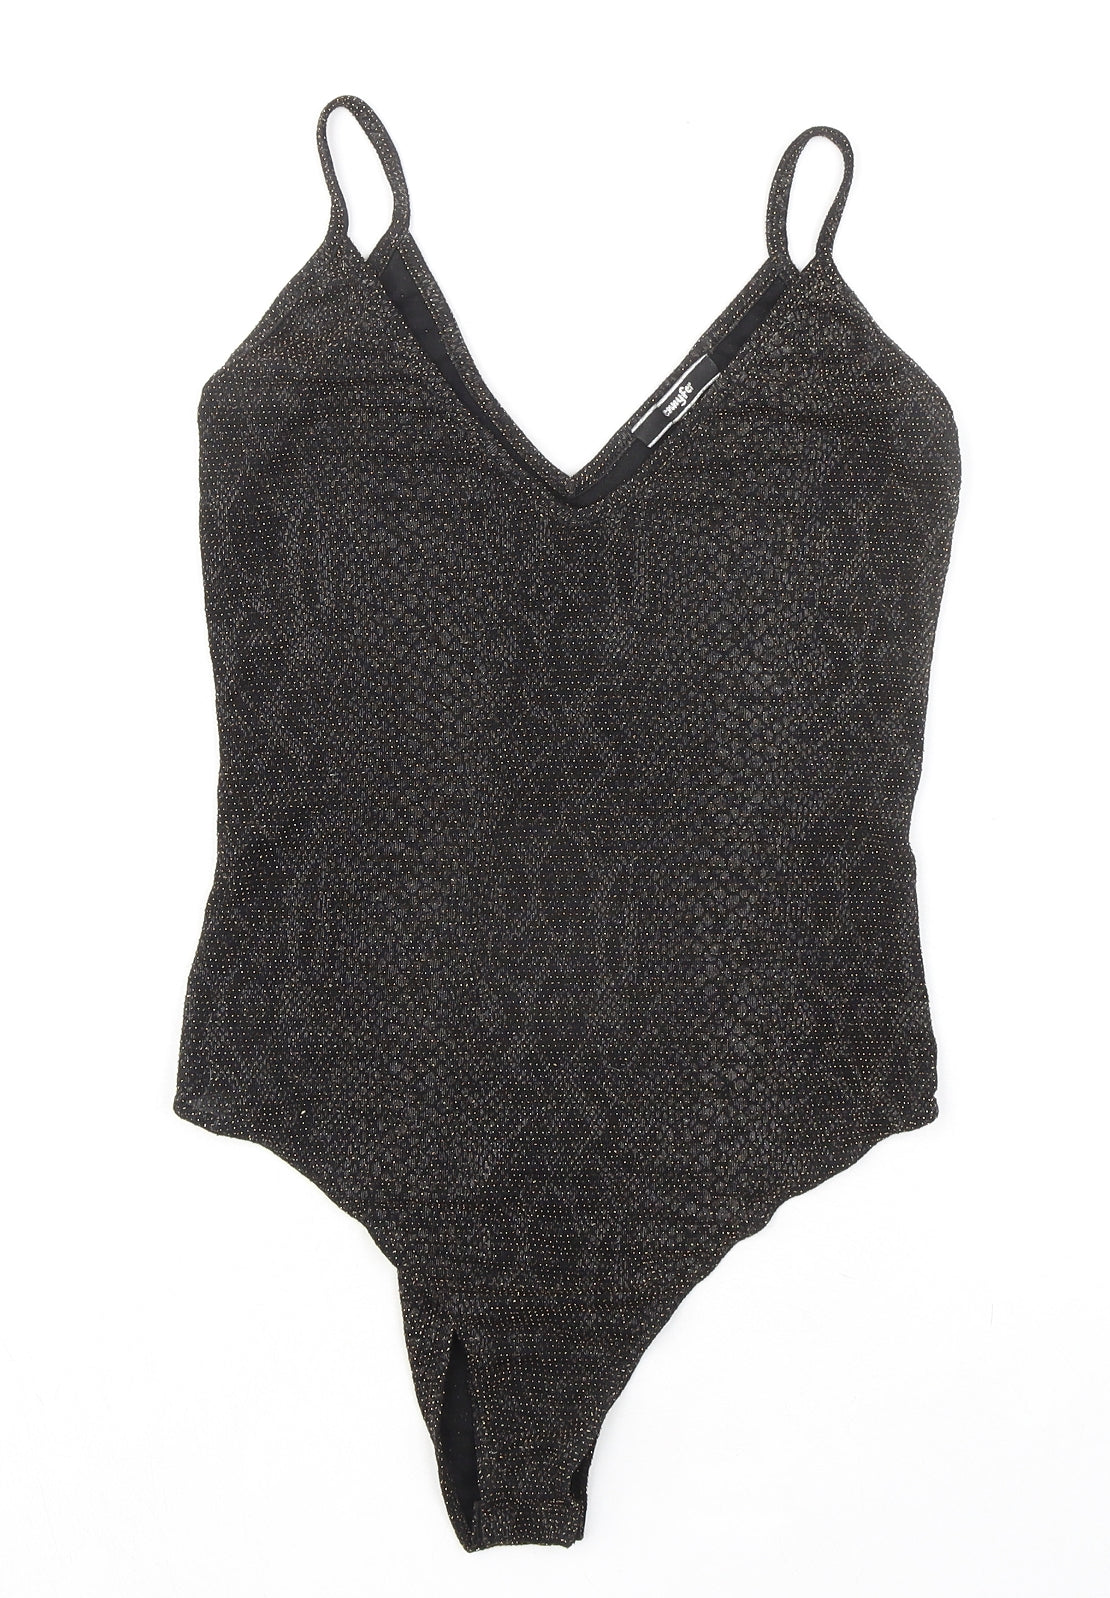 Jennyfer Womens Black Animal Print Polyester Bodysuit One-Piece Size M Snap - Snakeskin pattern